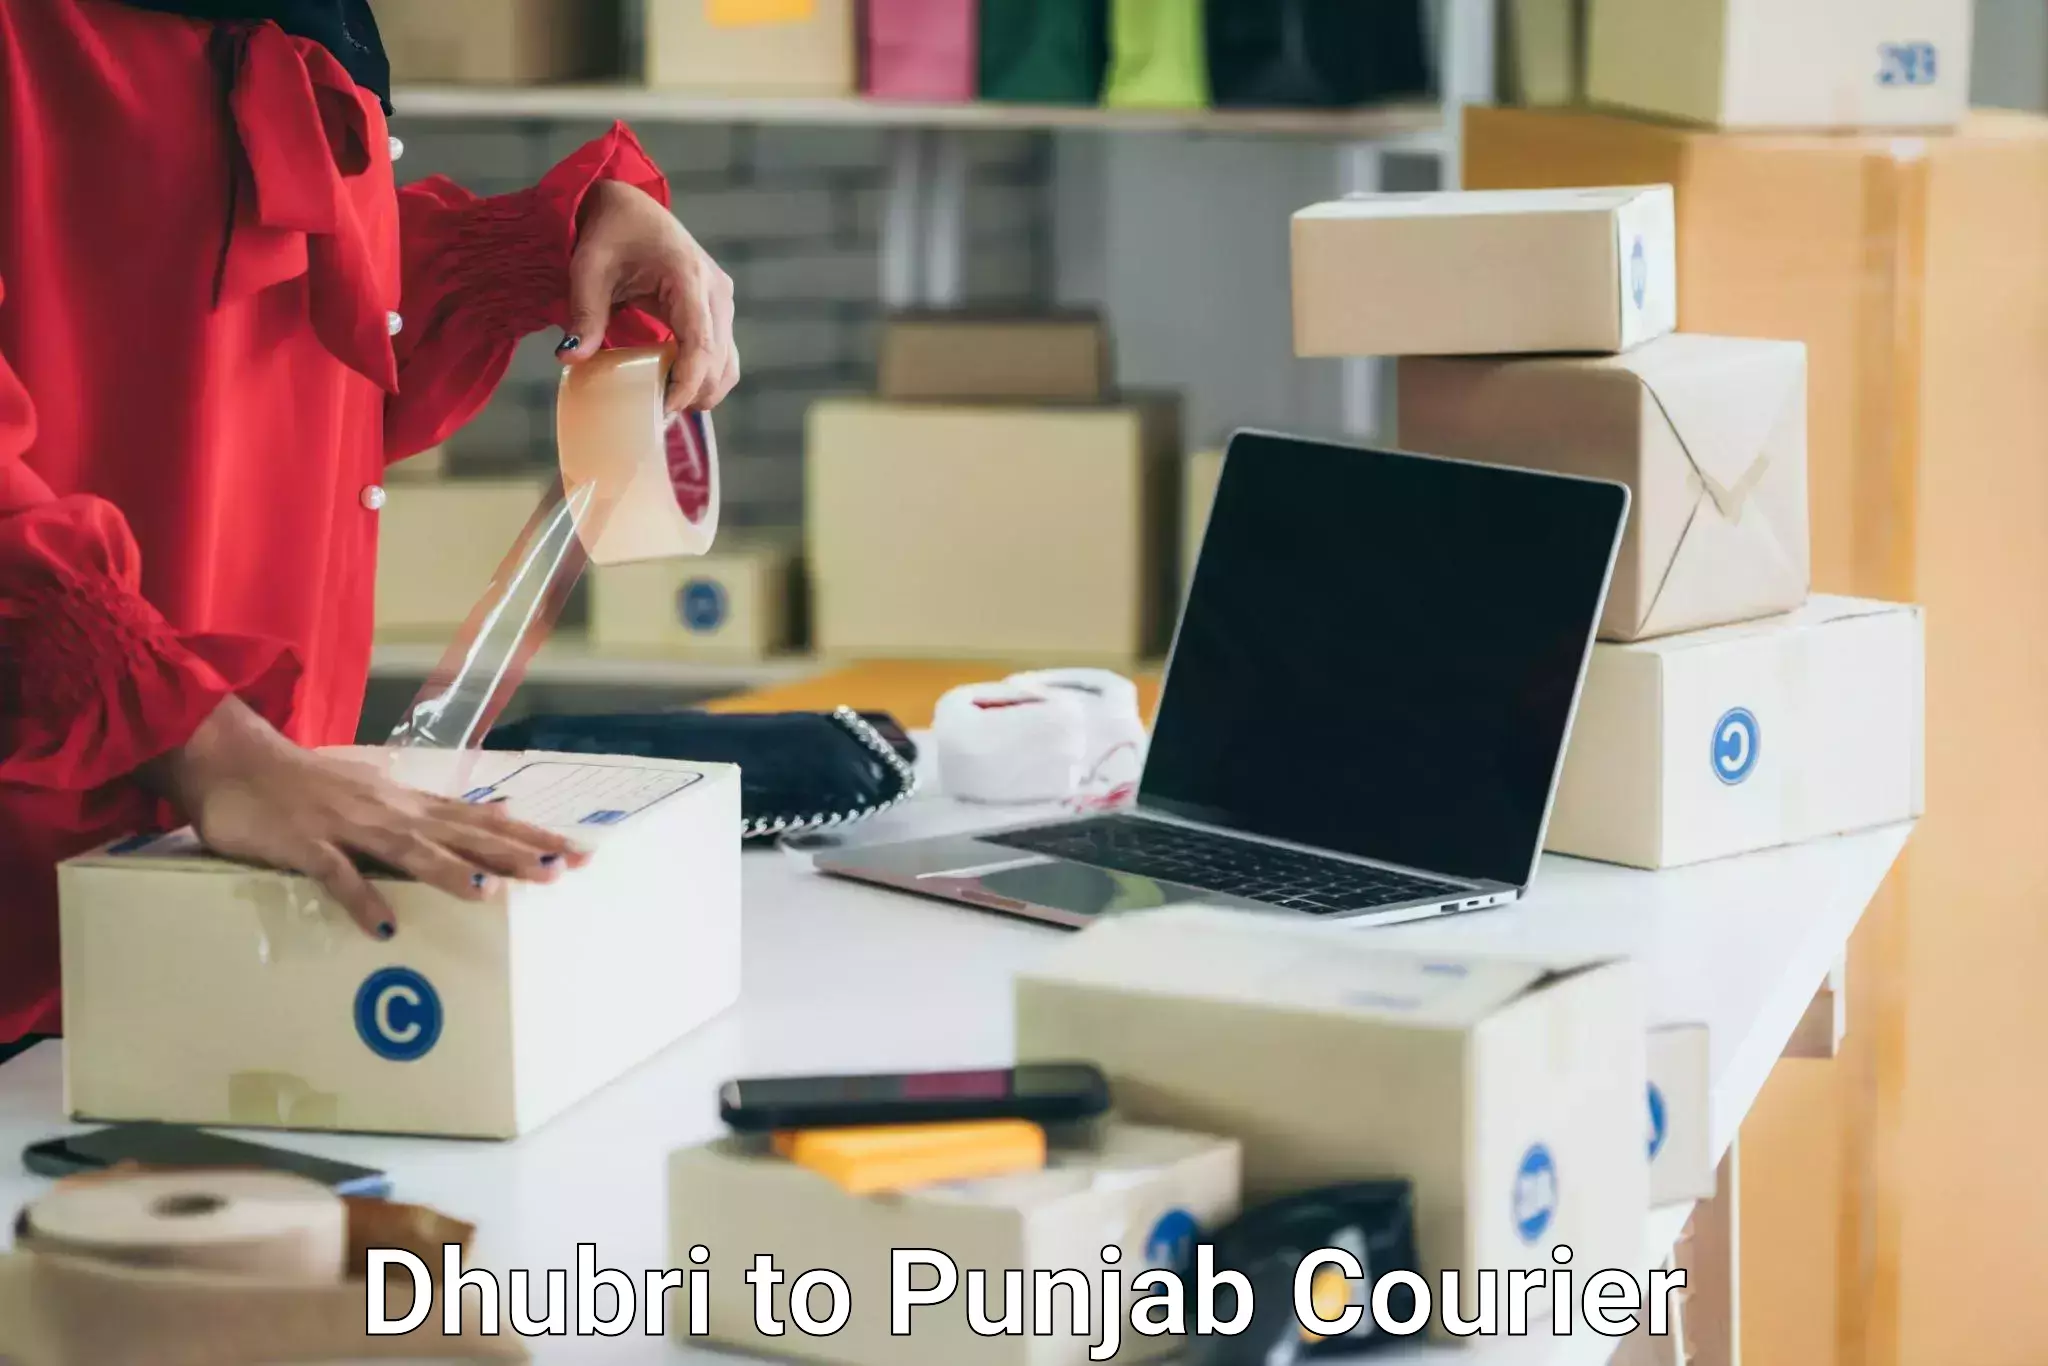 Residential moving experts Dhubri to Punjab